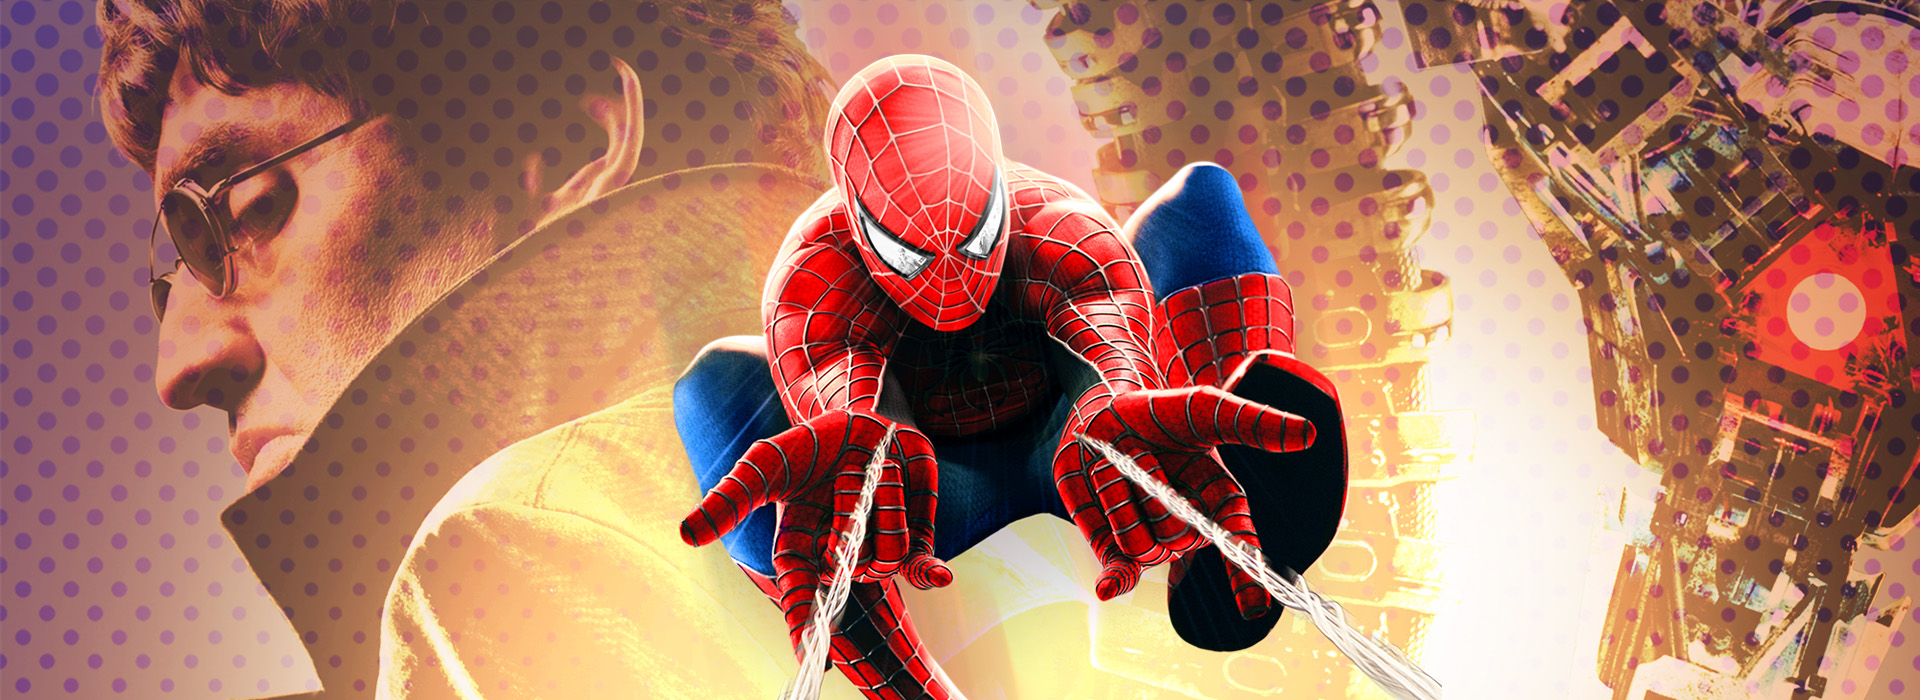 Movie poster Spider-Man 2